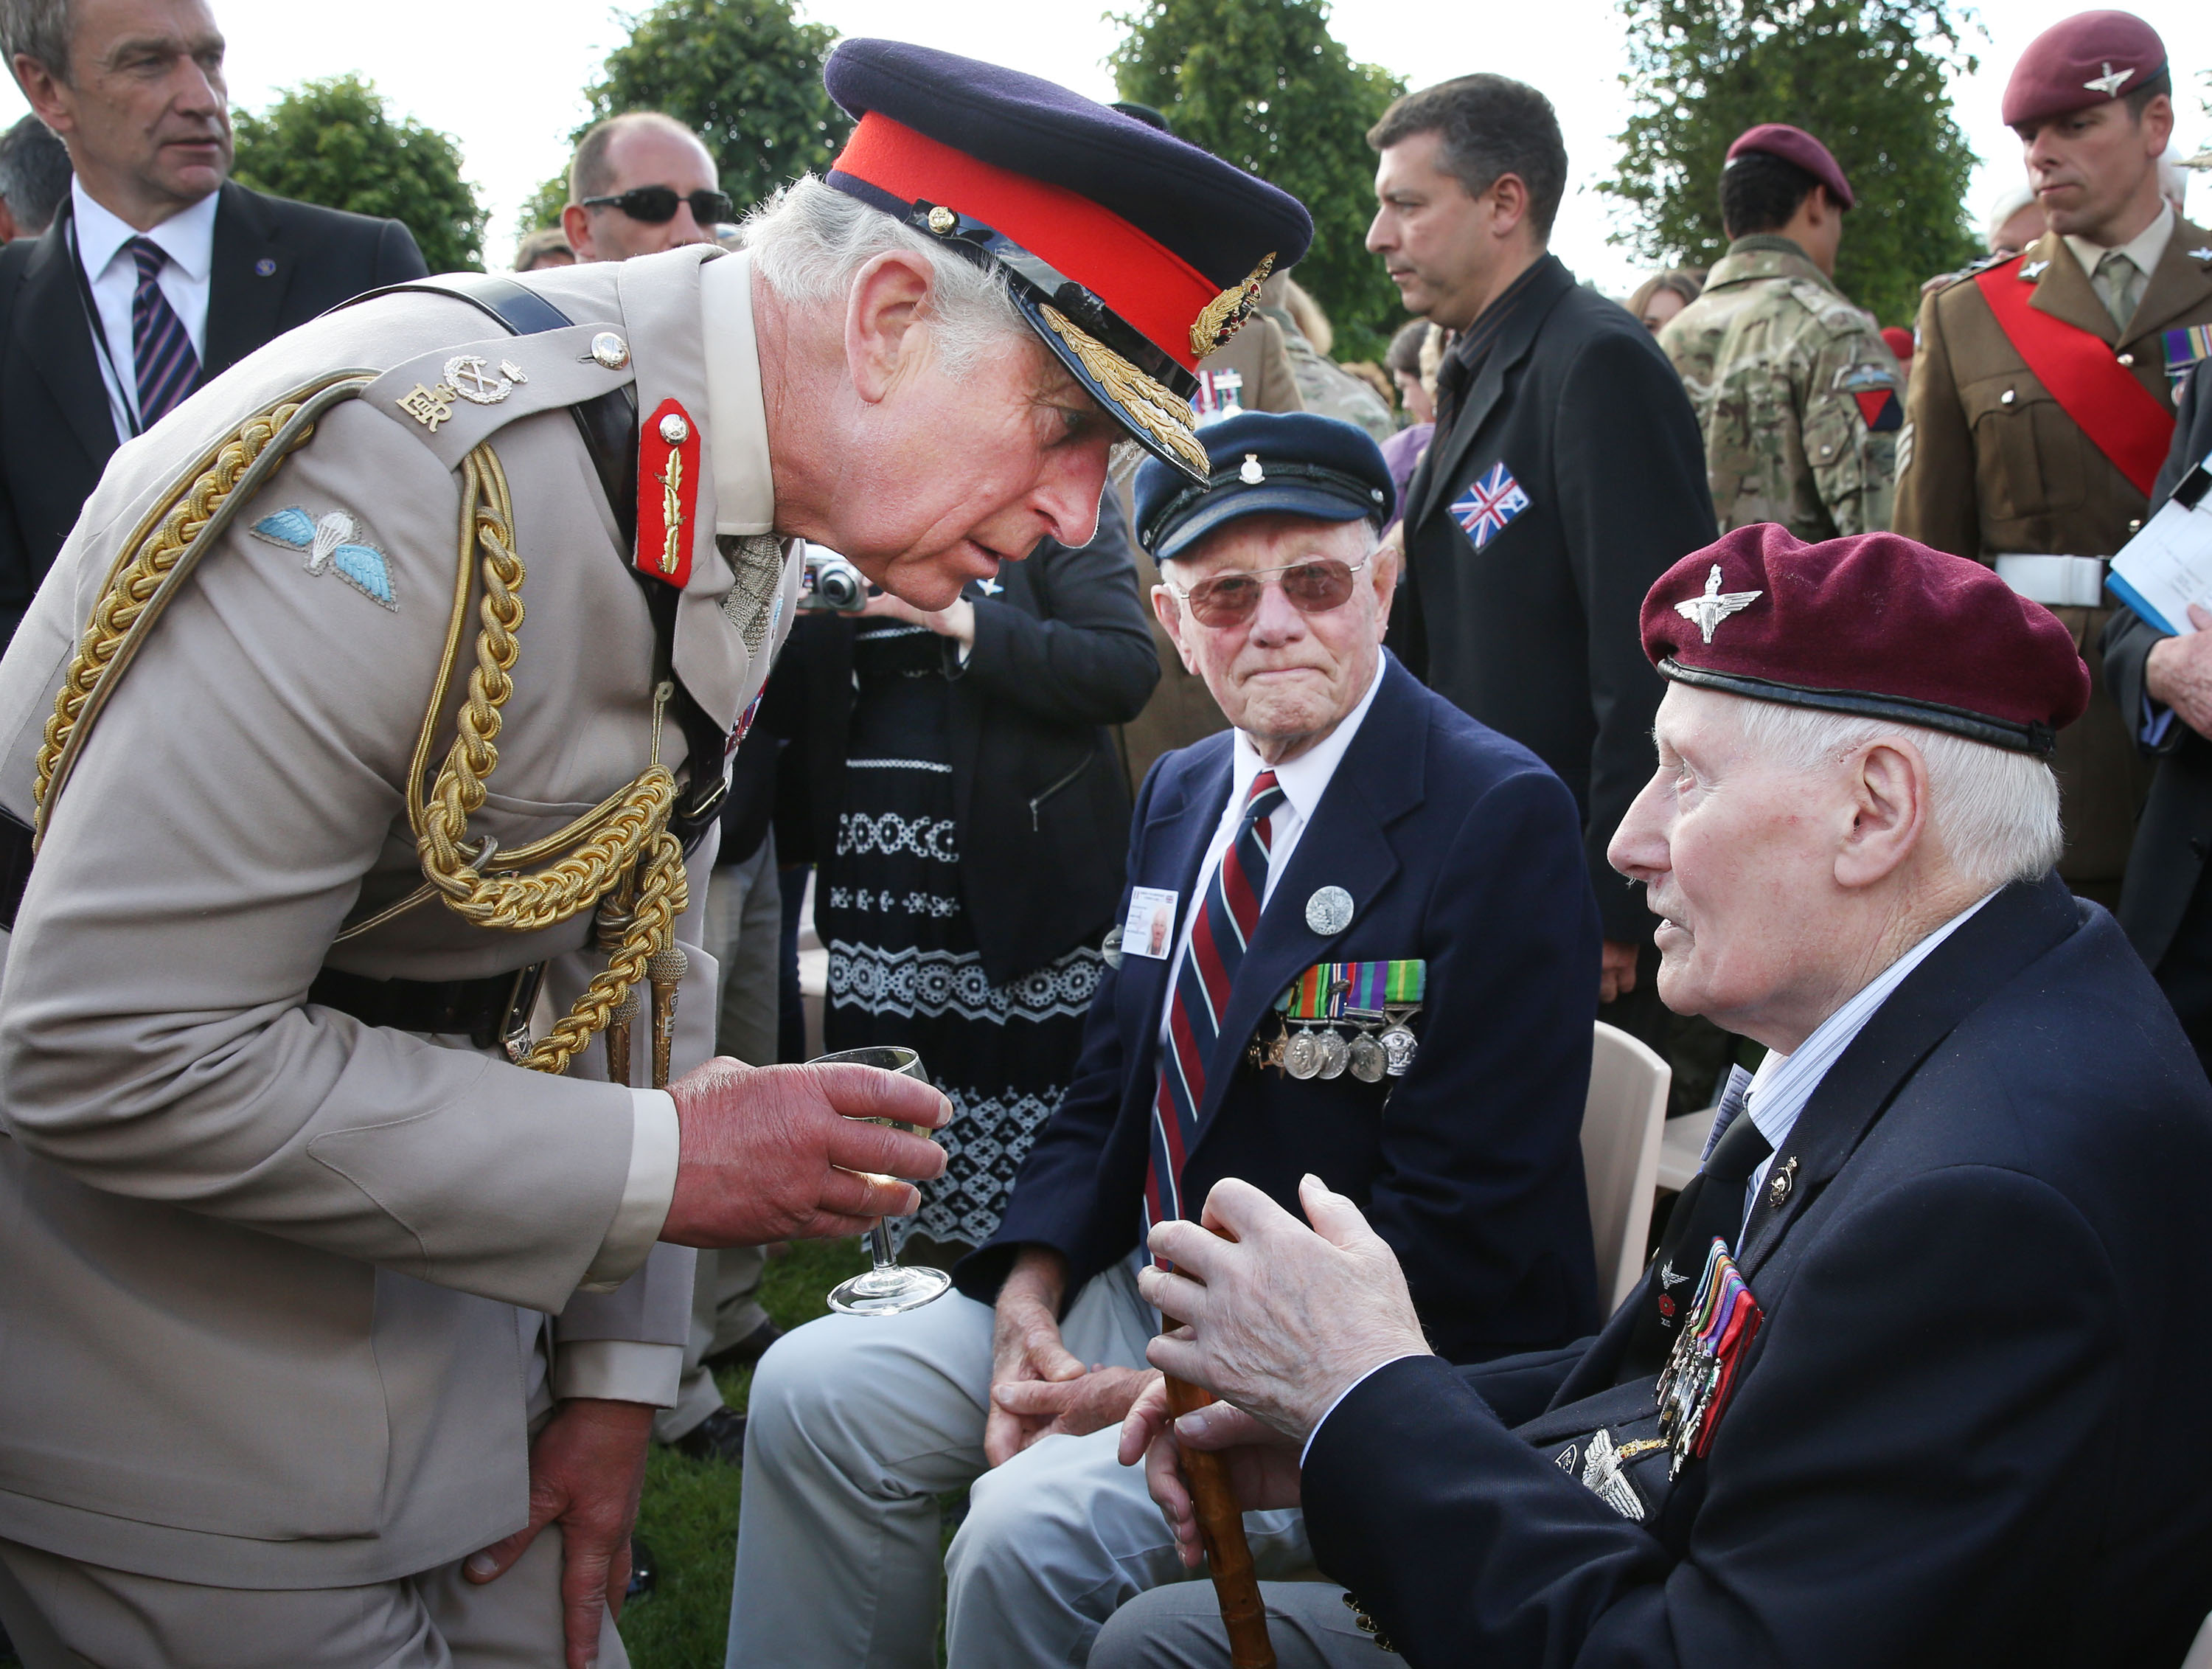 Charles trifft sich zum 70. Jahrestag der Landung mit den Normandie-Veteranen Jim Beasant (rechts) und Douglas Coxell